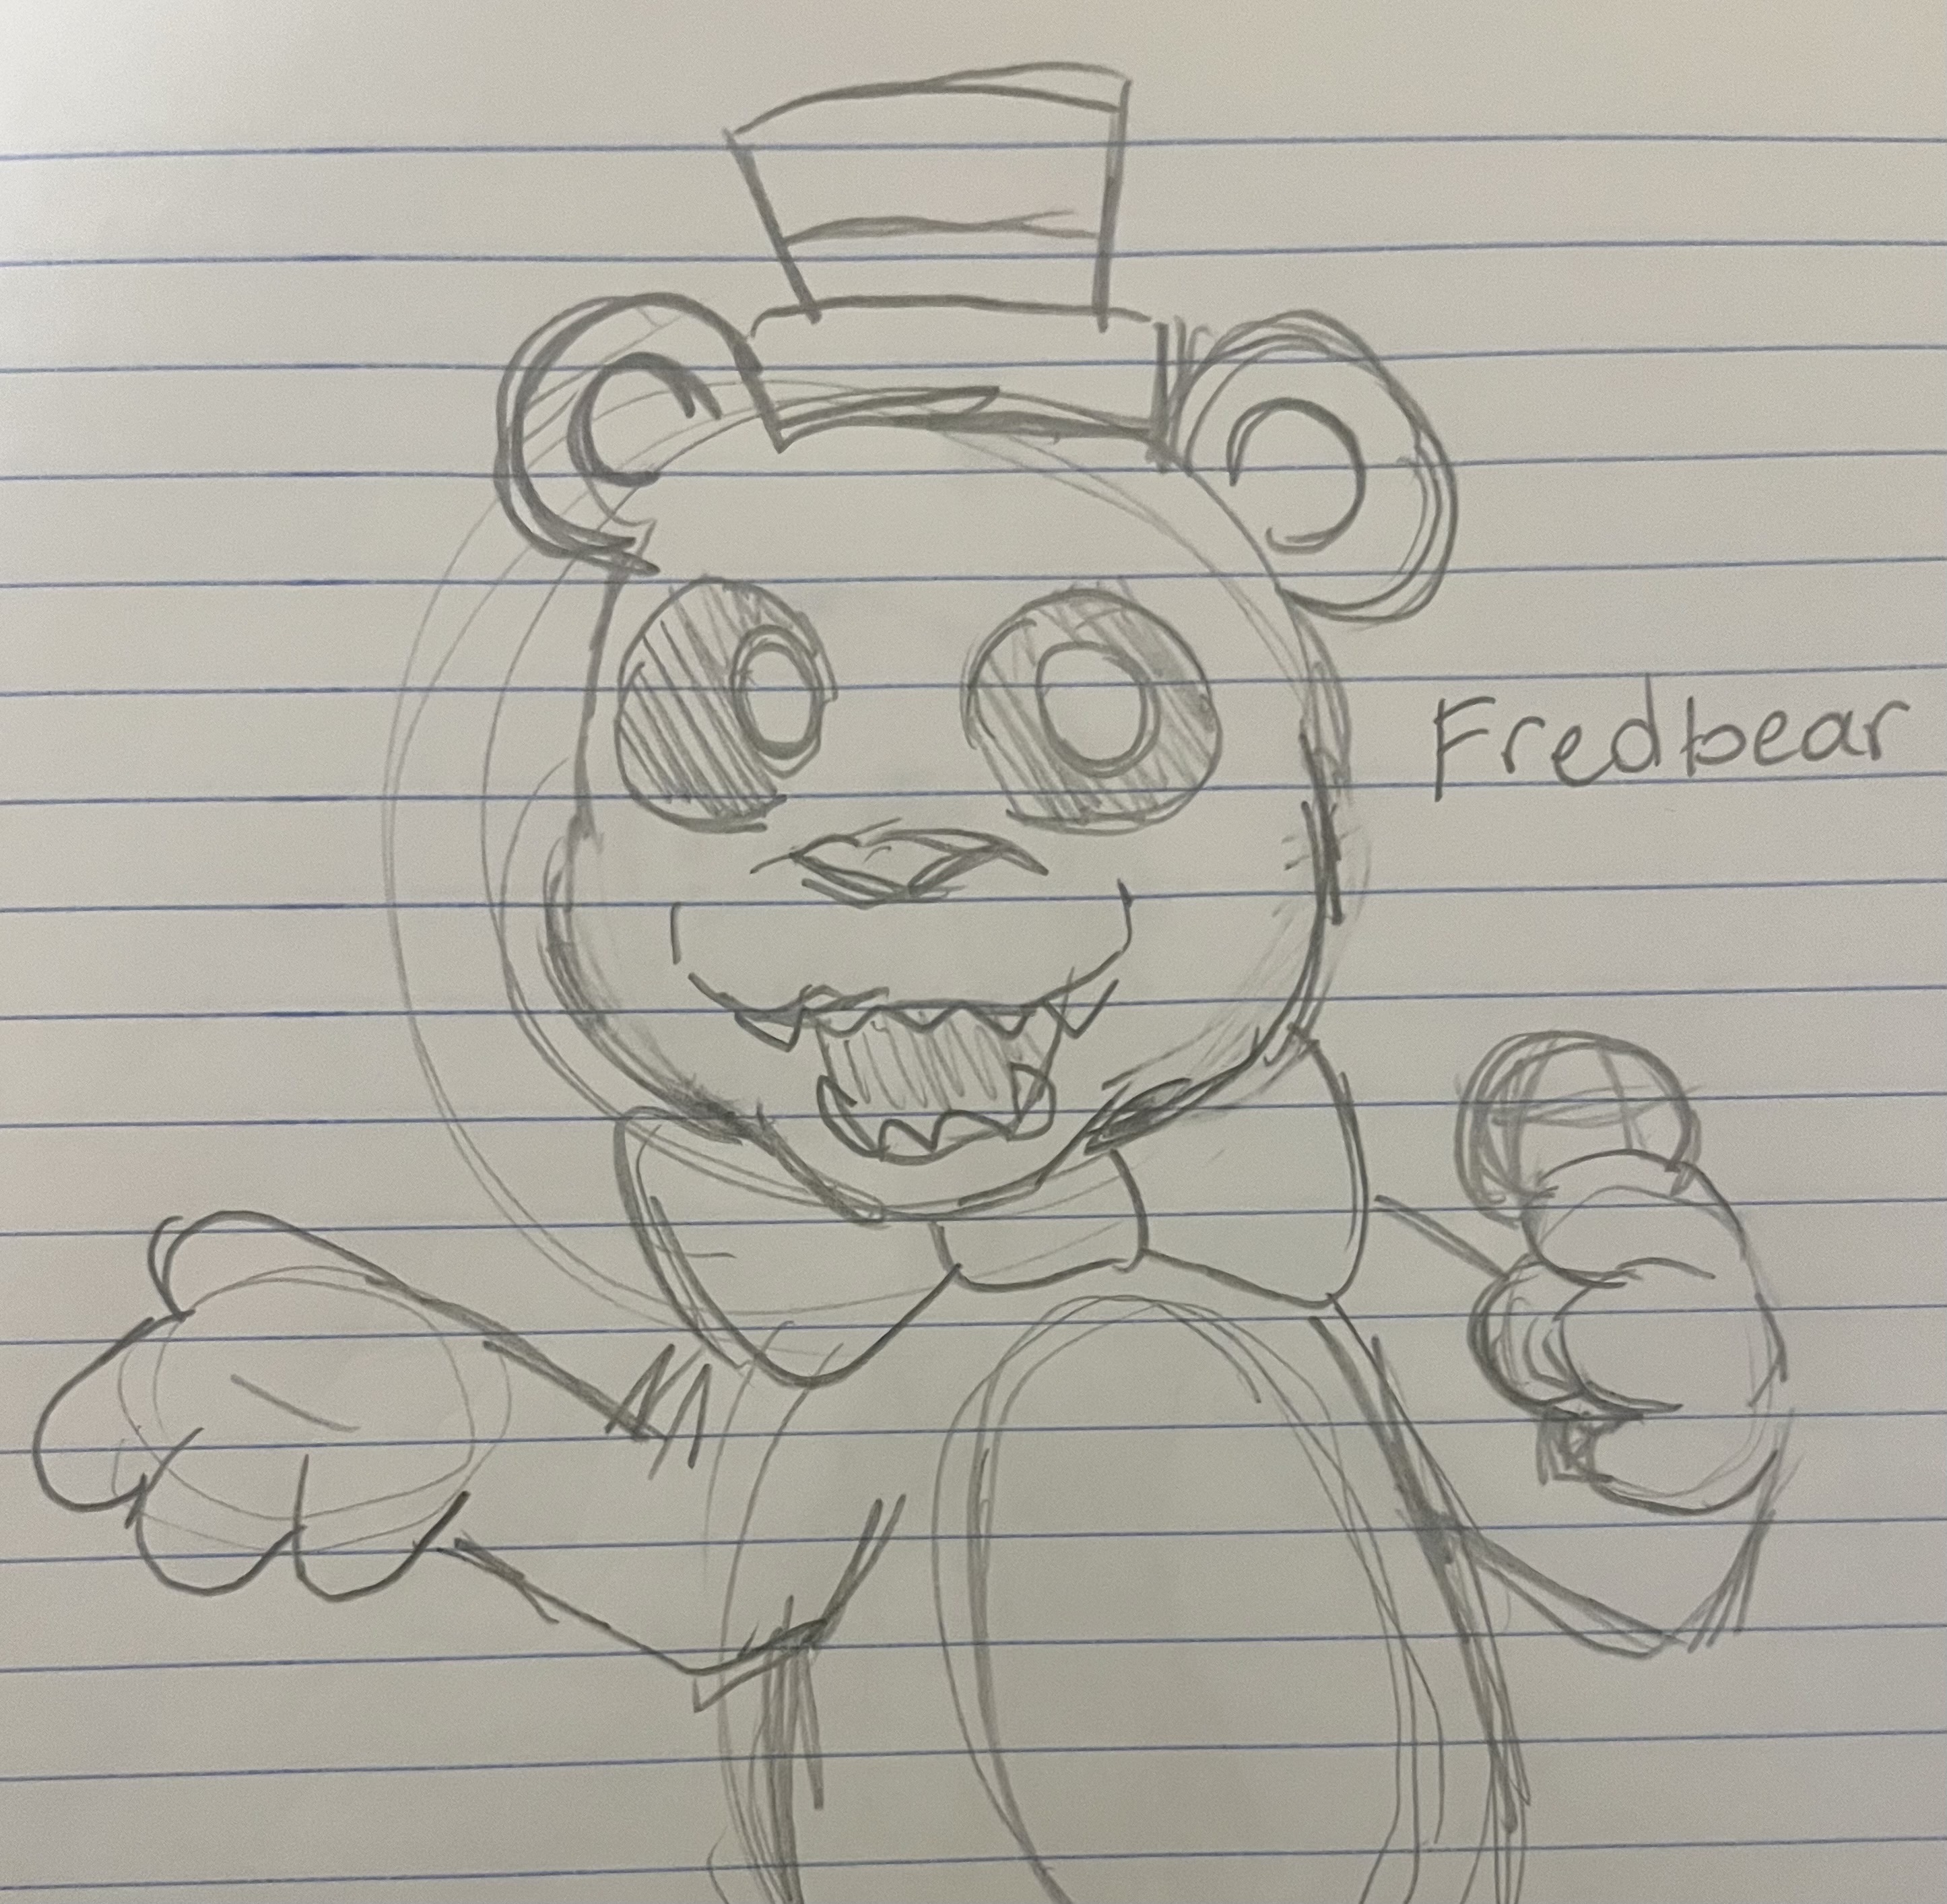 Freddy Fazbear Head by DarkofRose on DeviantArt